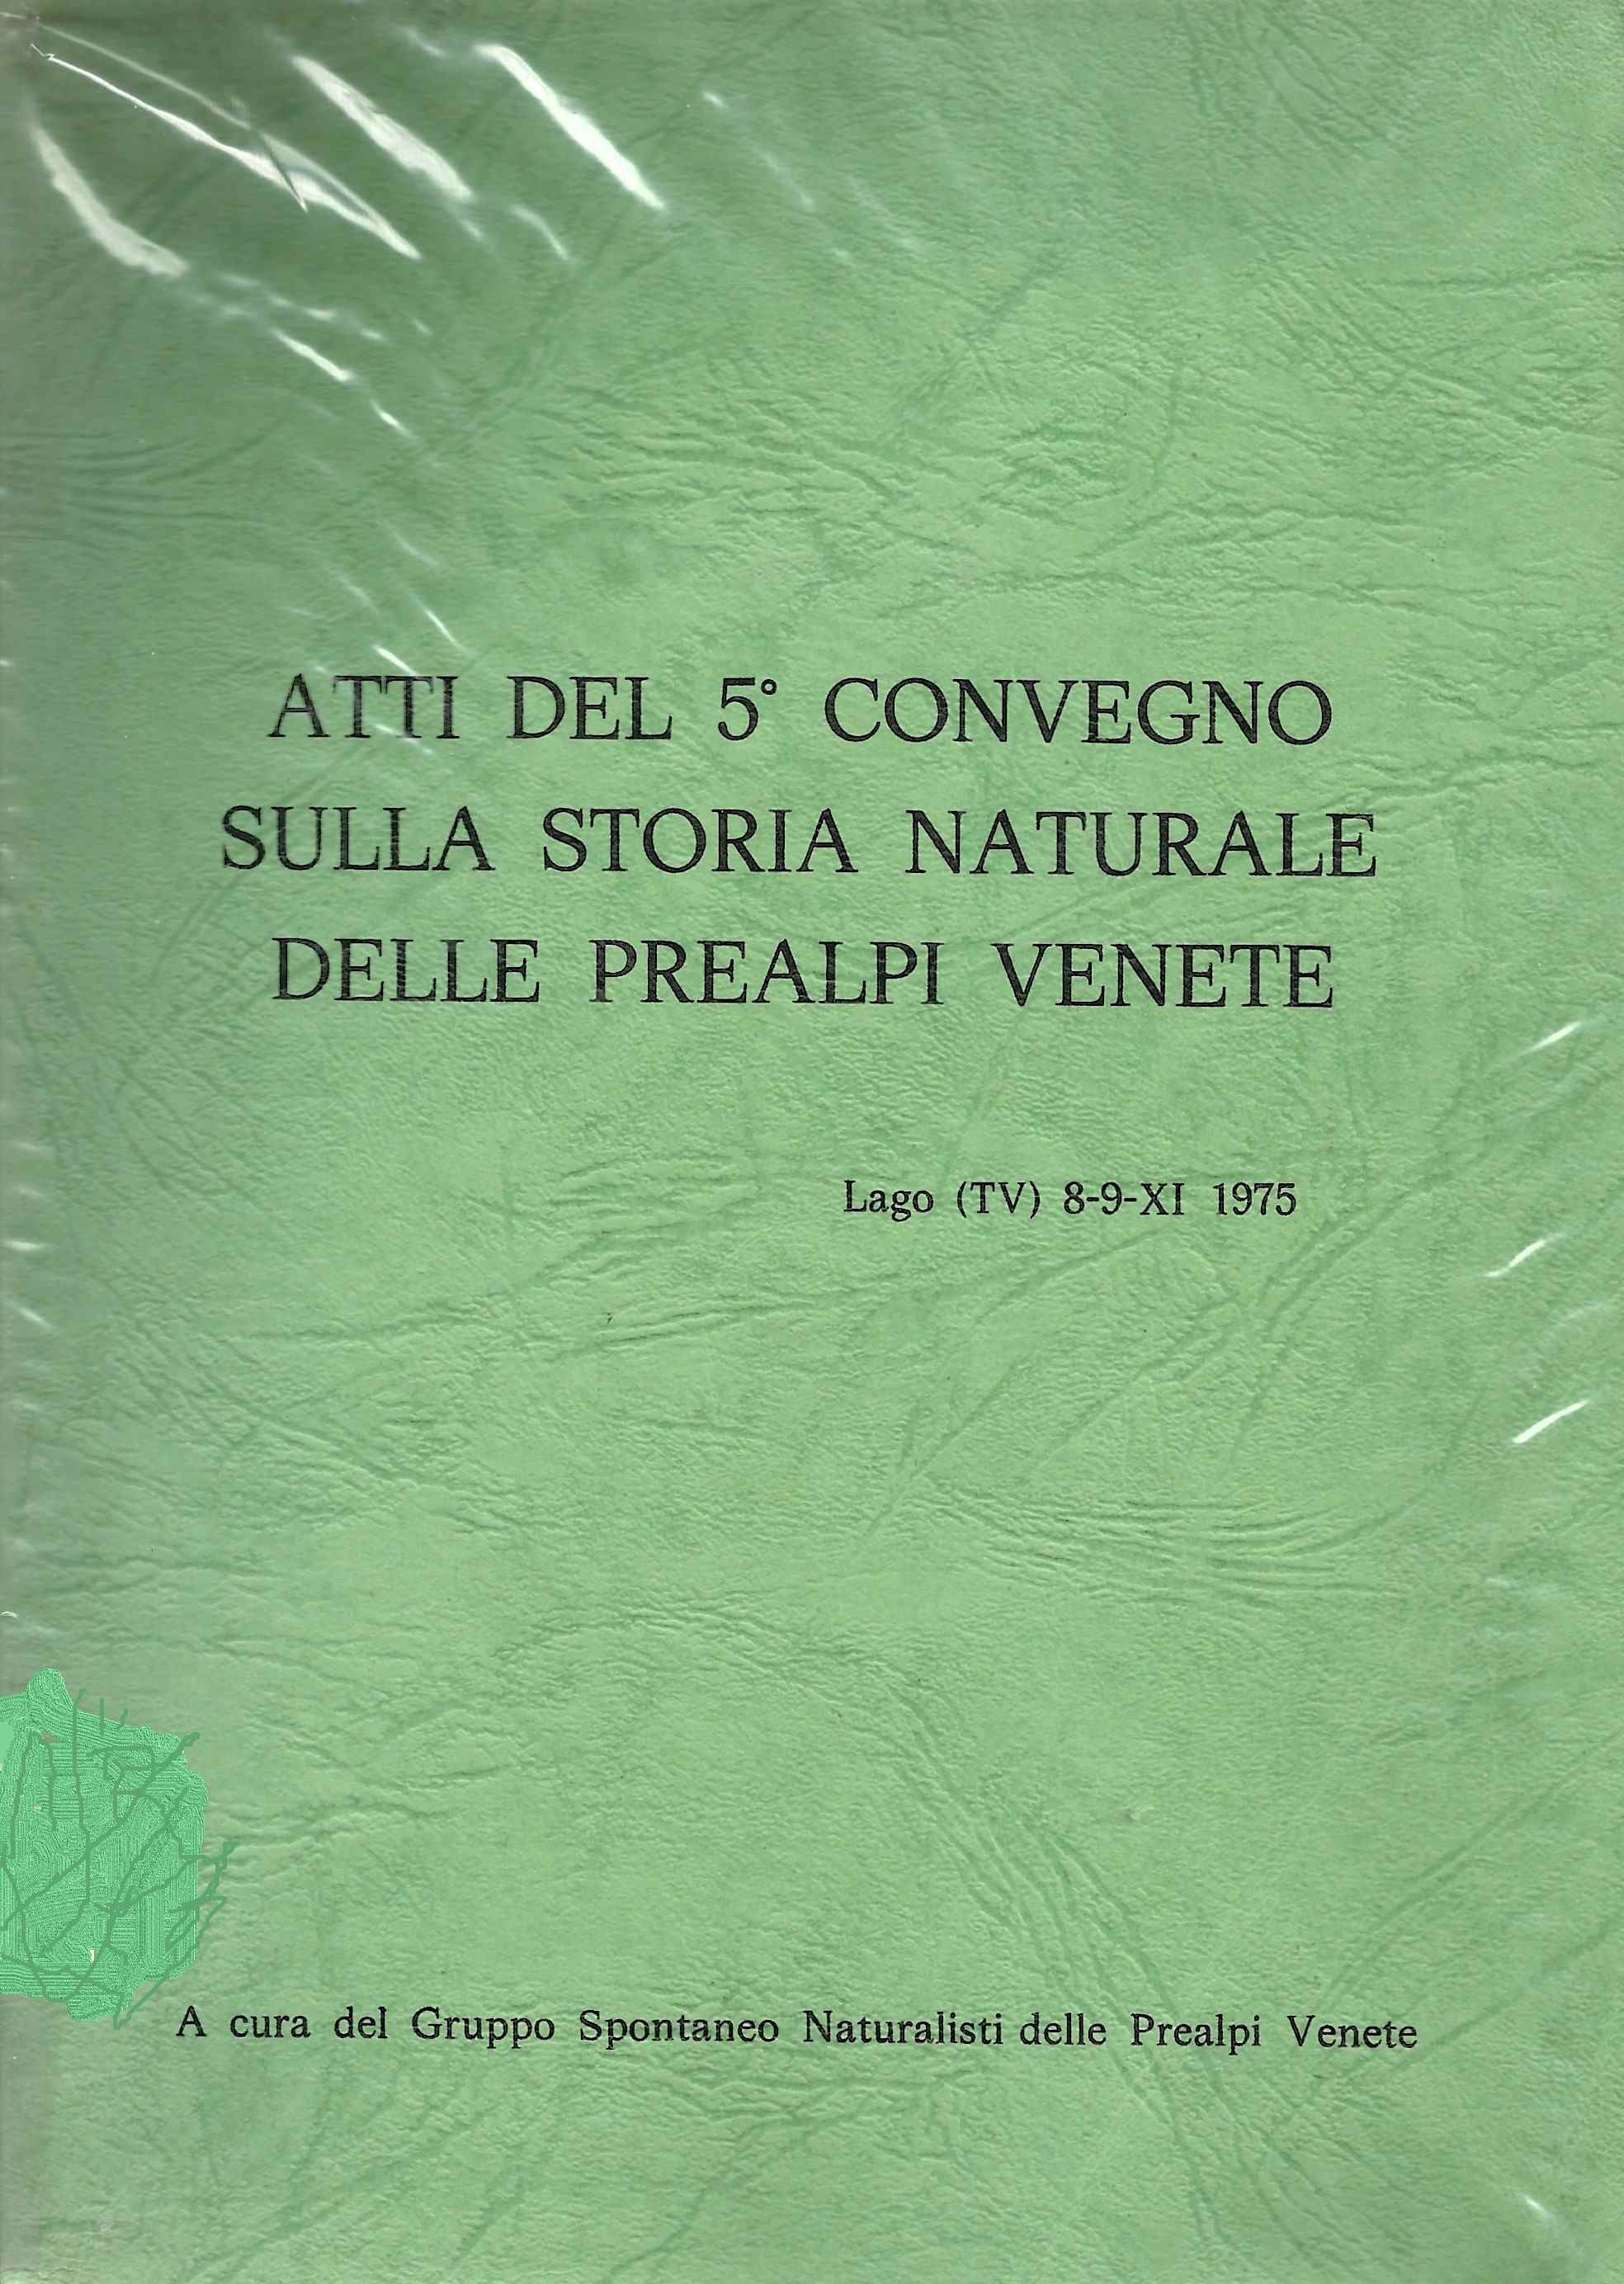 Copertina di Atti del 5° Convegno sulla Storia Naturale delle Prealpi Venete